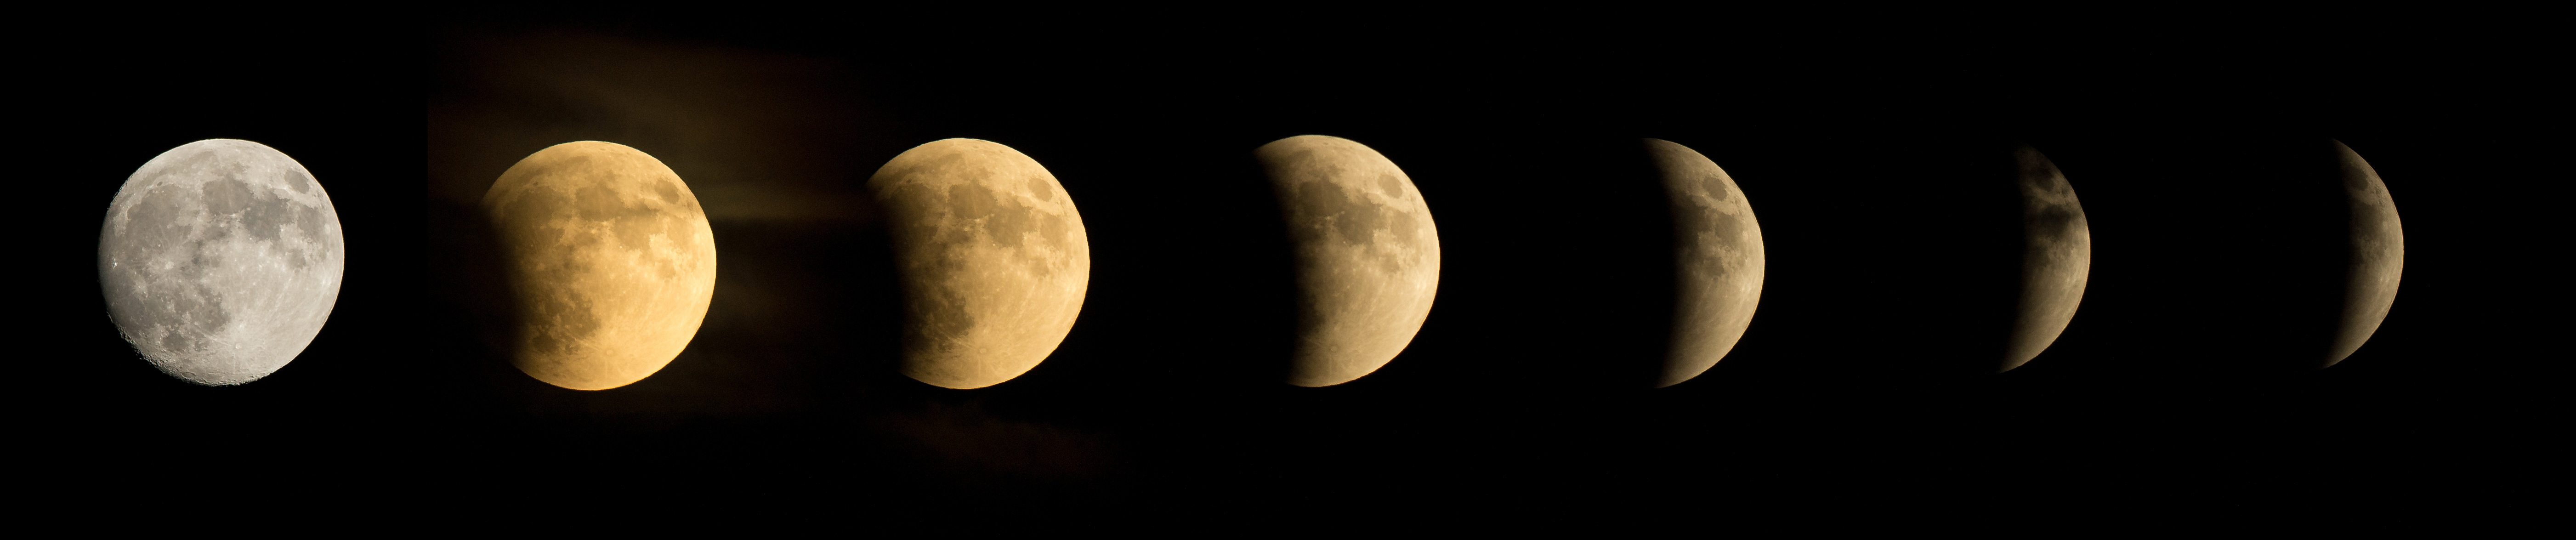 Серия фотографий, показывающих лунное затмение